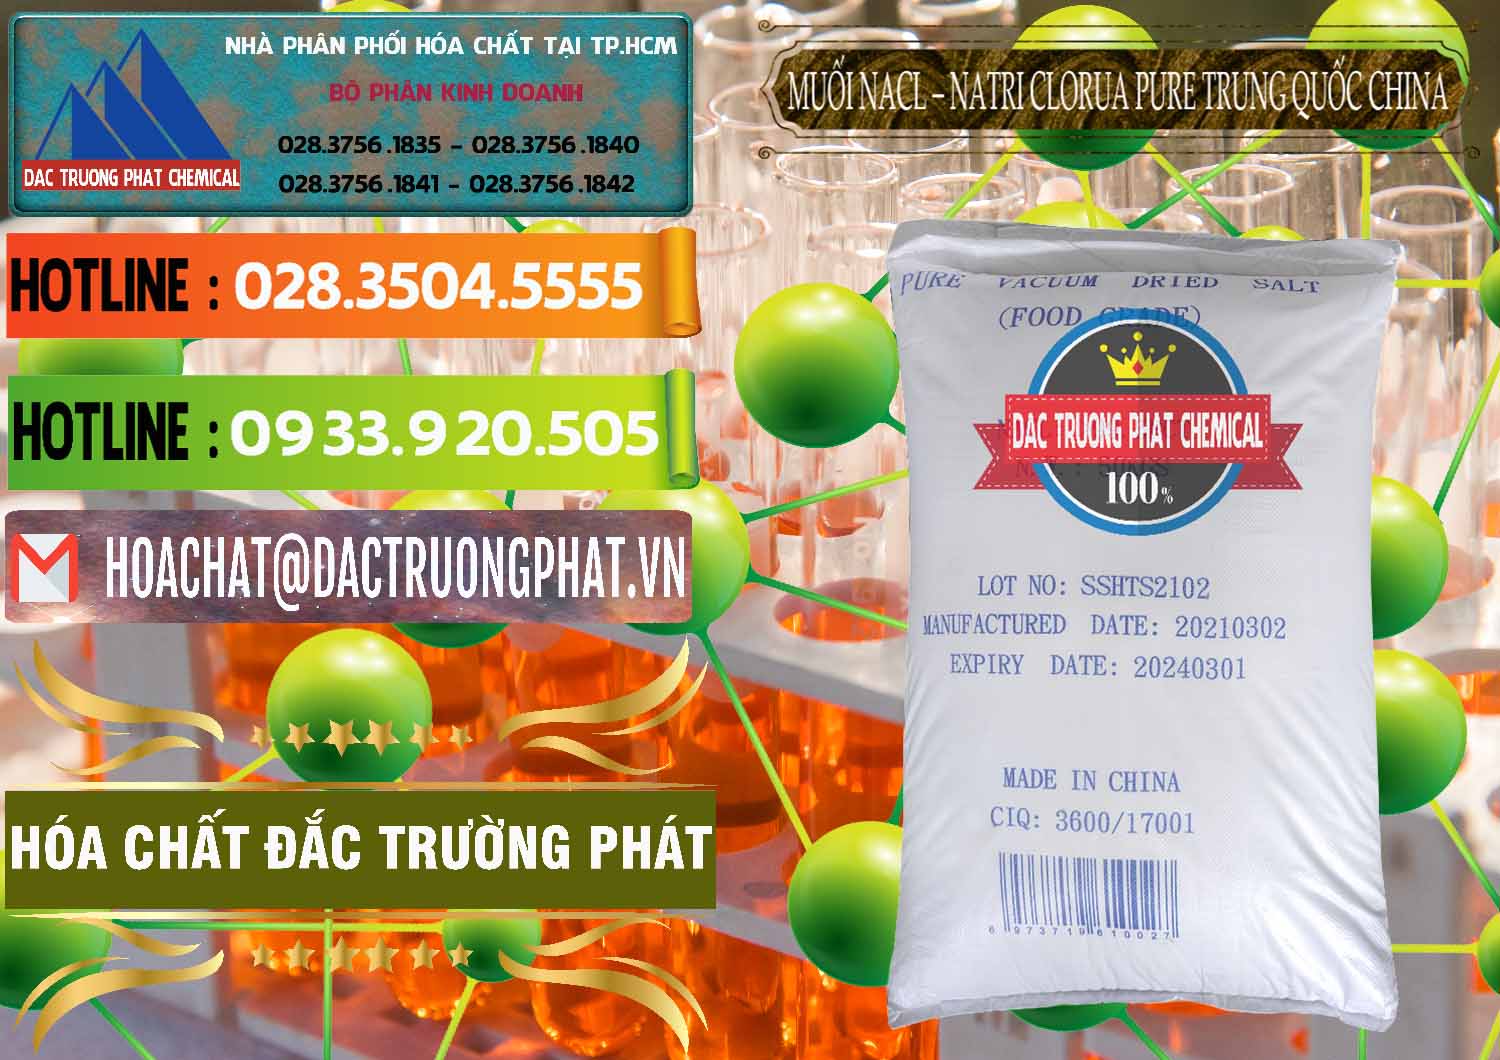 Chuyên bán _ phân phối Muối NaCL – Sodium Chloride Pure Trung Quốc China - 0230 - Công ty chuyên phân phối & nhập khẩu hóa chất tại TP.HCM - cungcaphoachat.com.vn